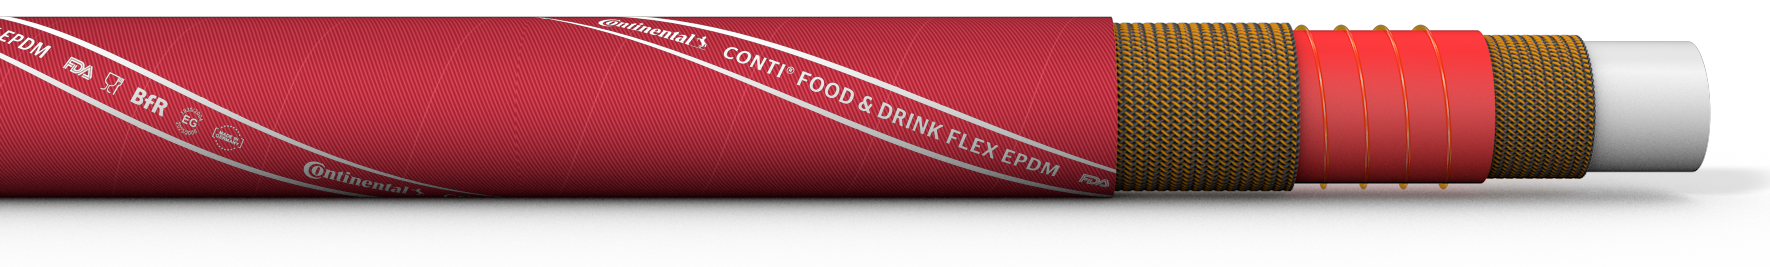 CONTI® FOOD & DRINK FLEX EPDM